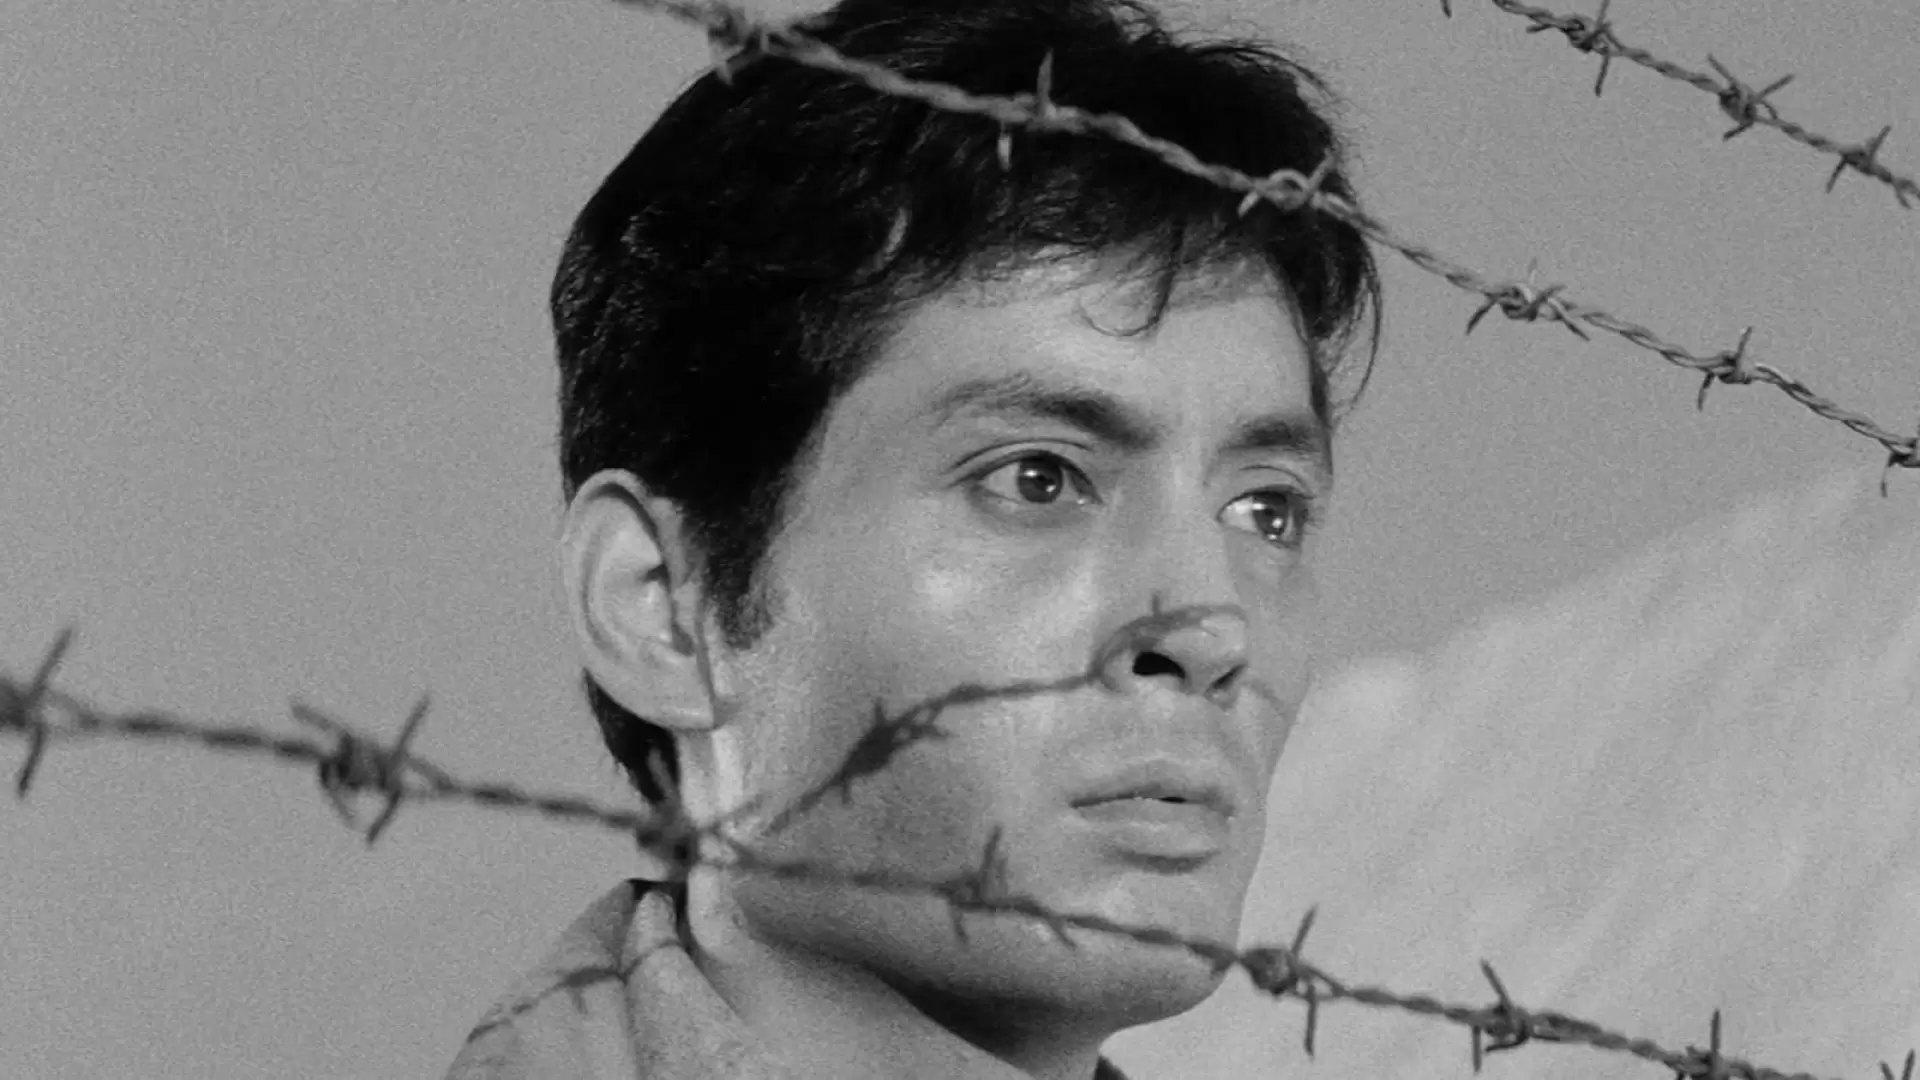 دانلود فیلم The Human Condition I: No Greater Love 1959 (شرایط انسانی ۱: نهایت عشق) با زیرنویس فارسی و تماشای آنلاین